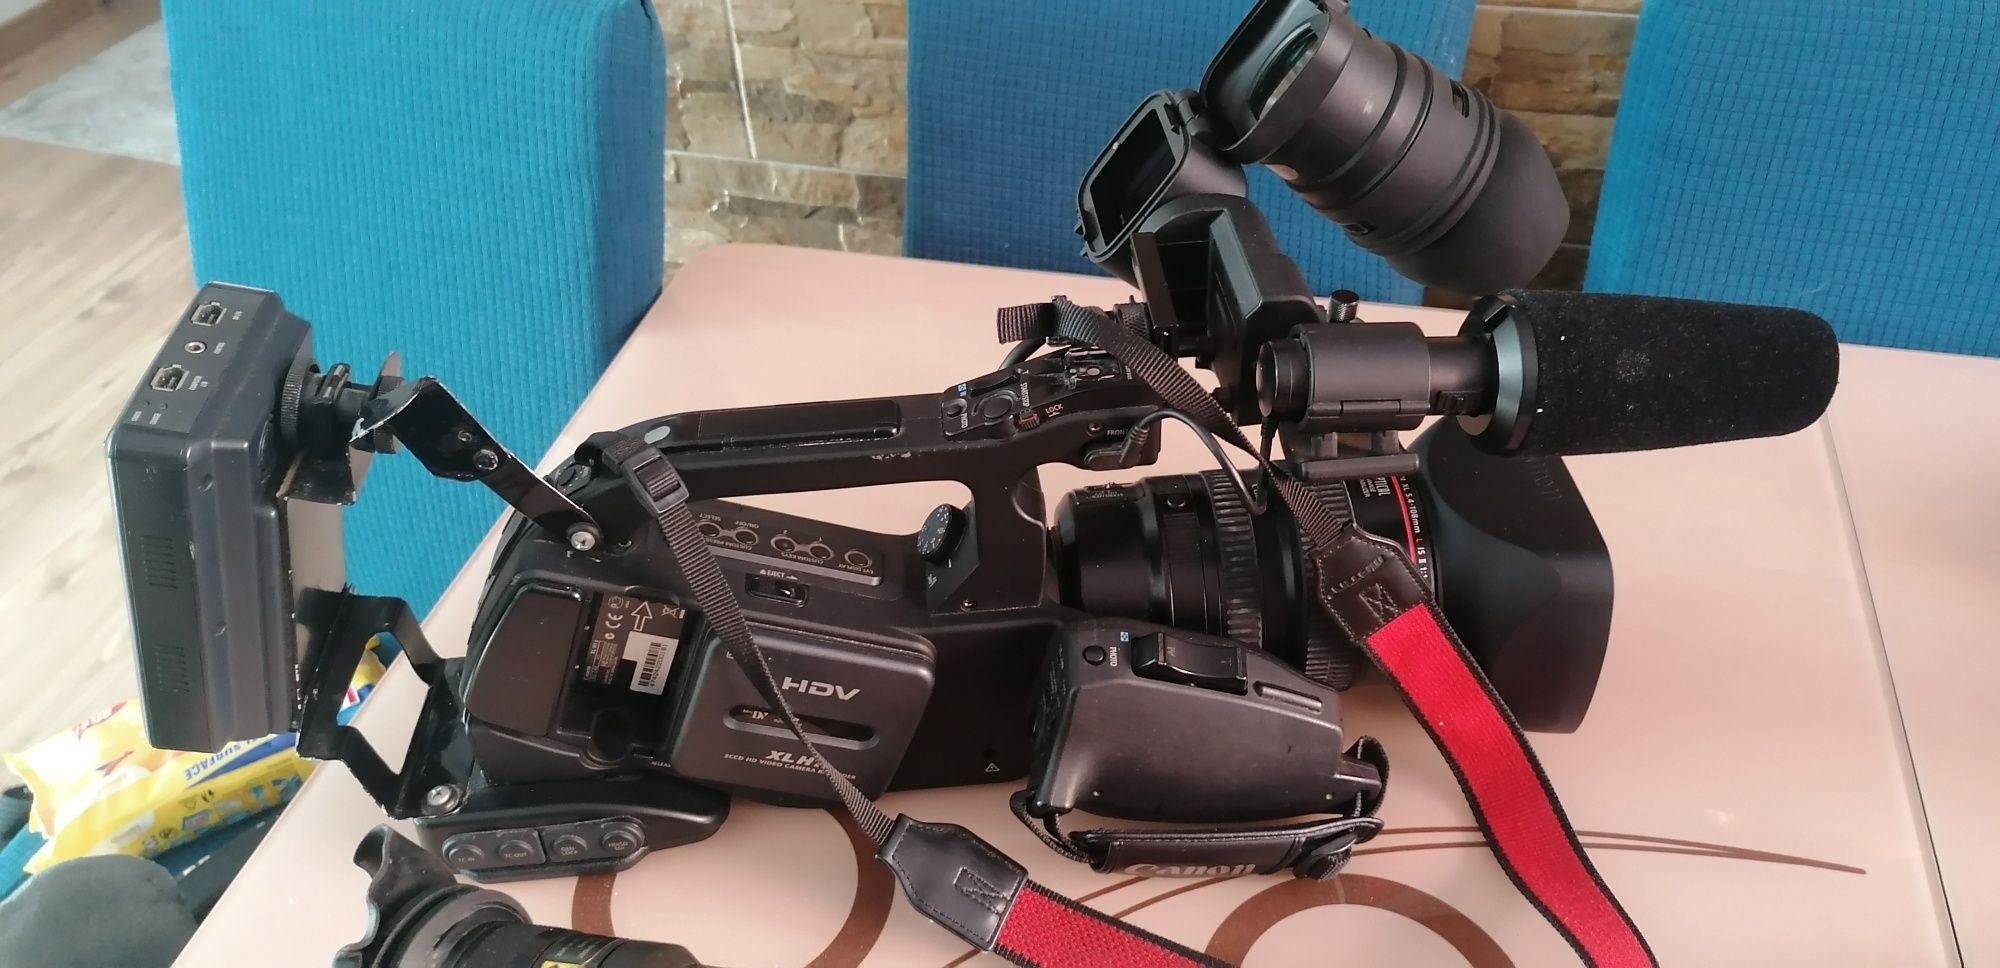 Camere video profesionale Canon Xl H1 și Canon Xl 1.